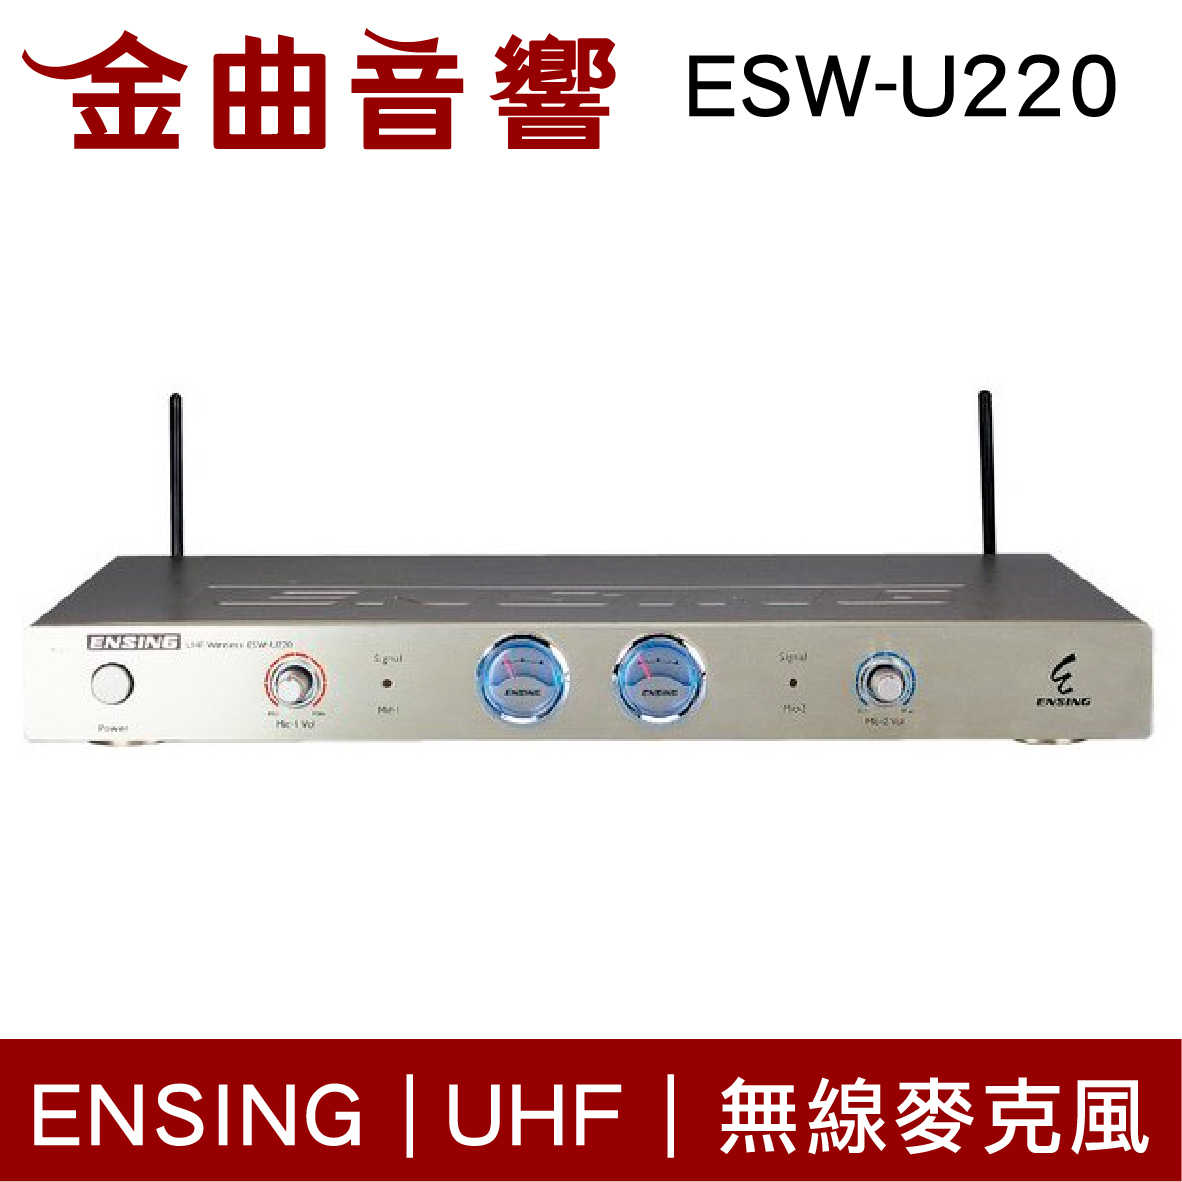 ENSING 燕聲 ESW-U220 UHF 無線麥克風 | 金曲音響